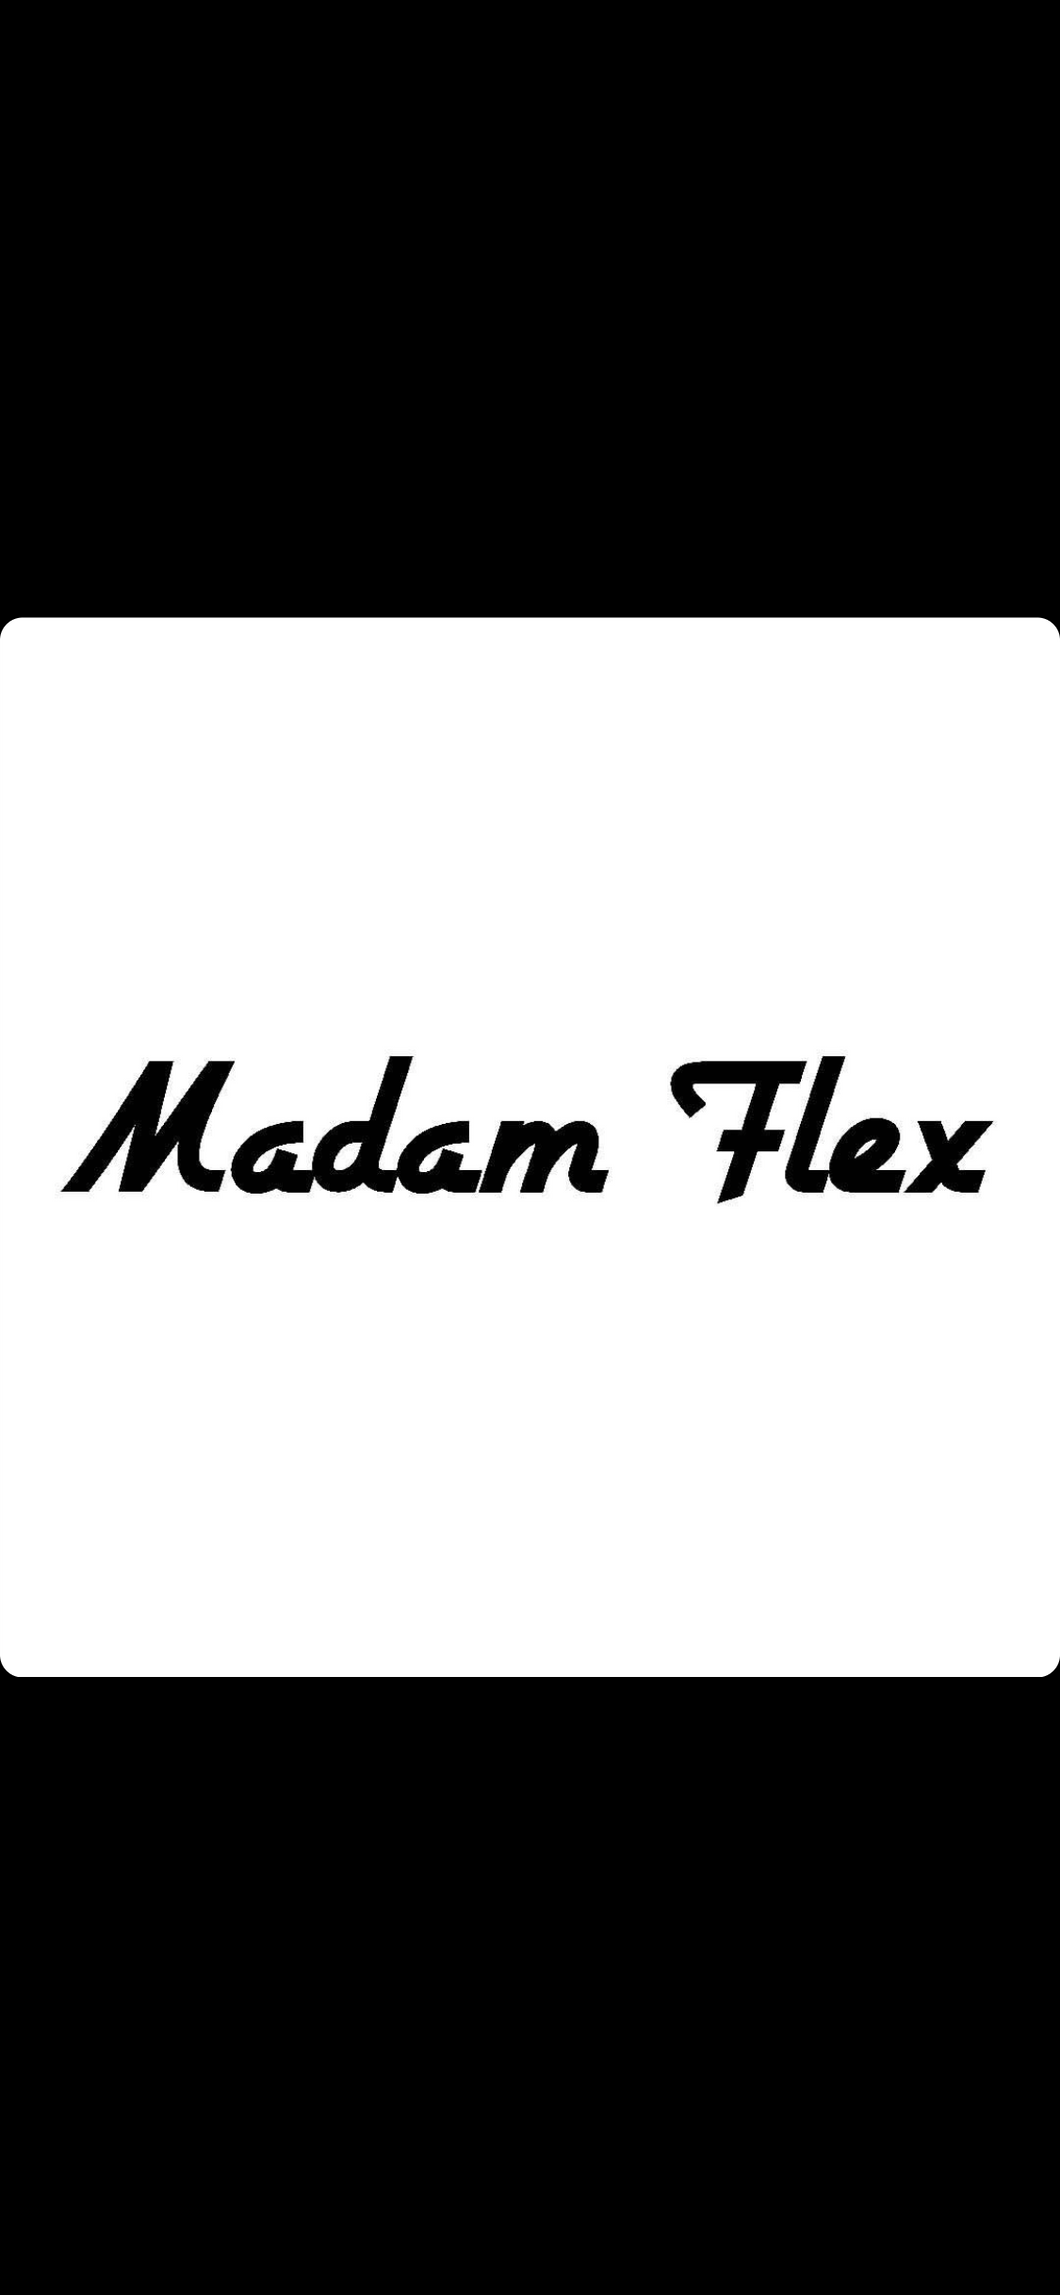 Madam Flex